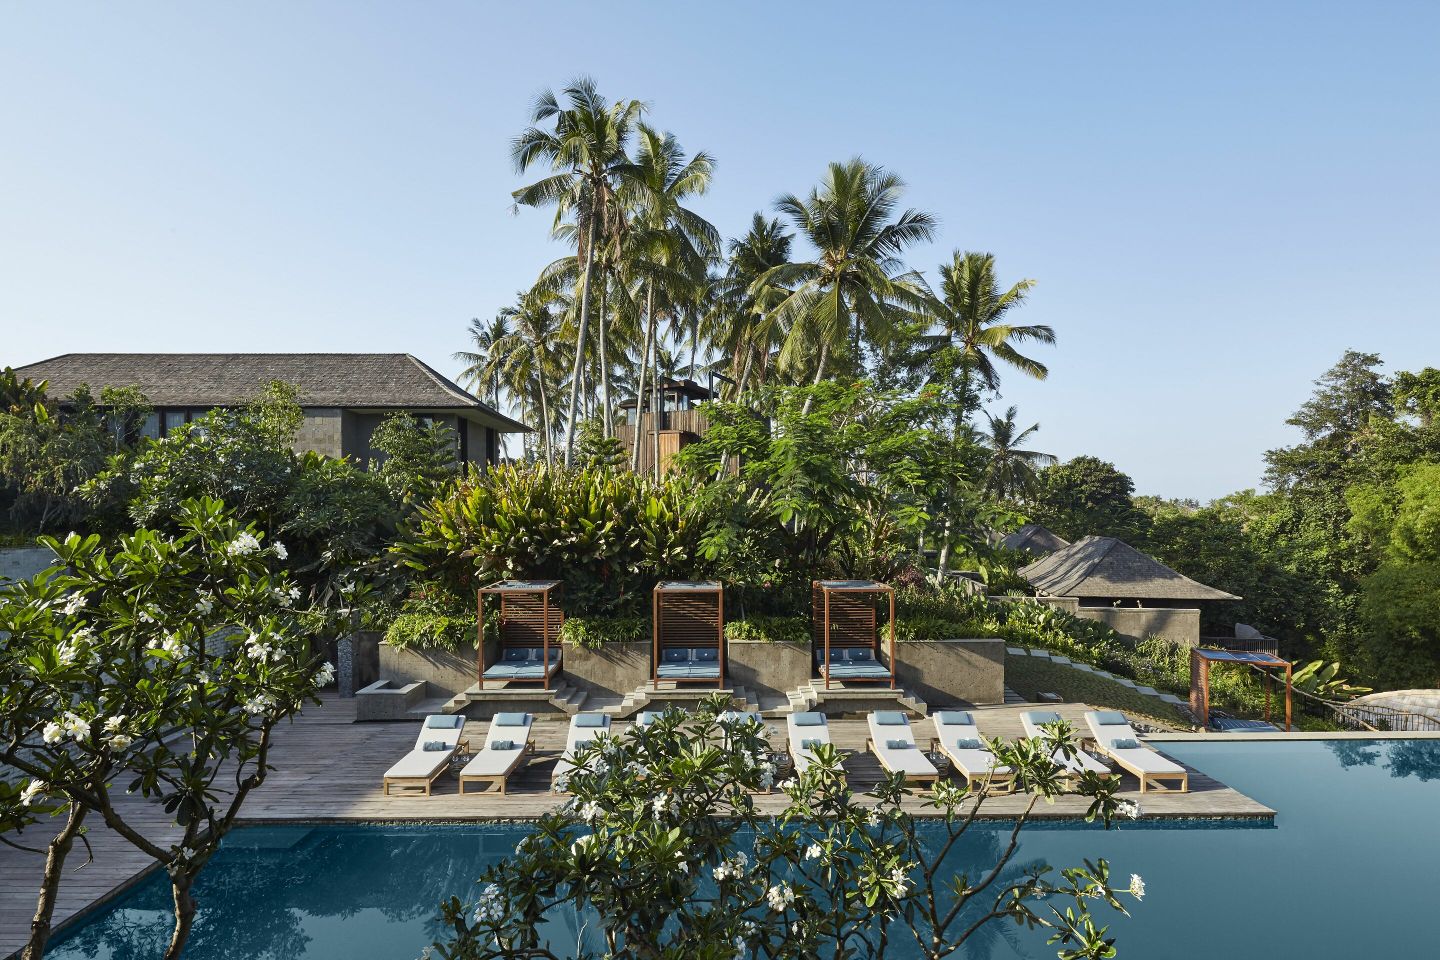 Introducing Nirjhara, a resort redefining sustainable luxury